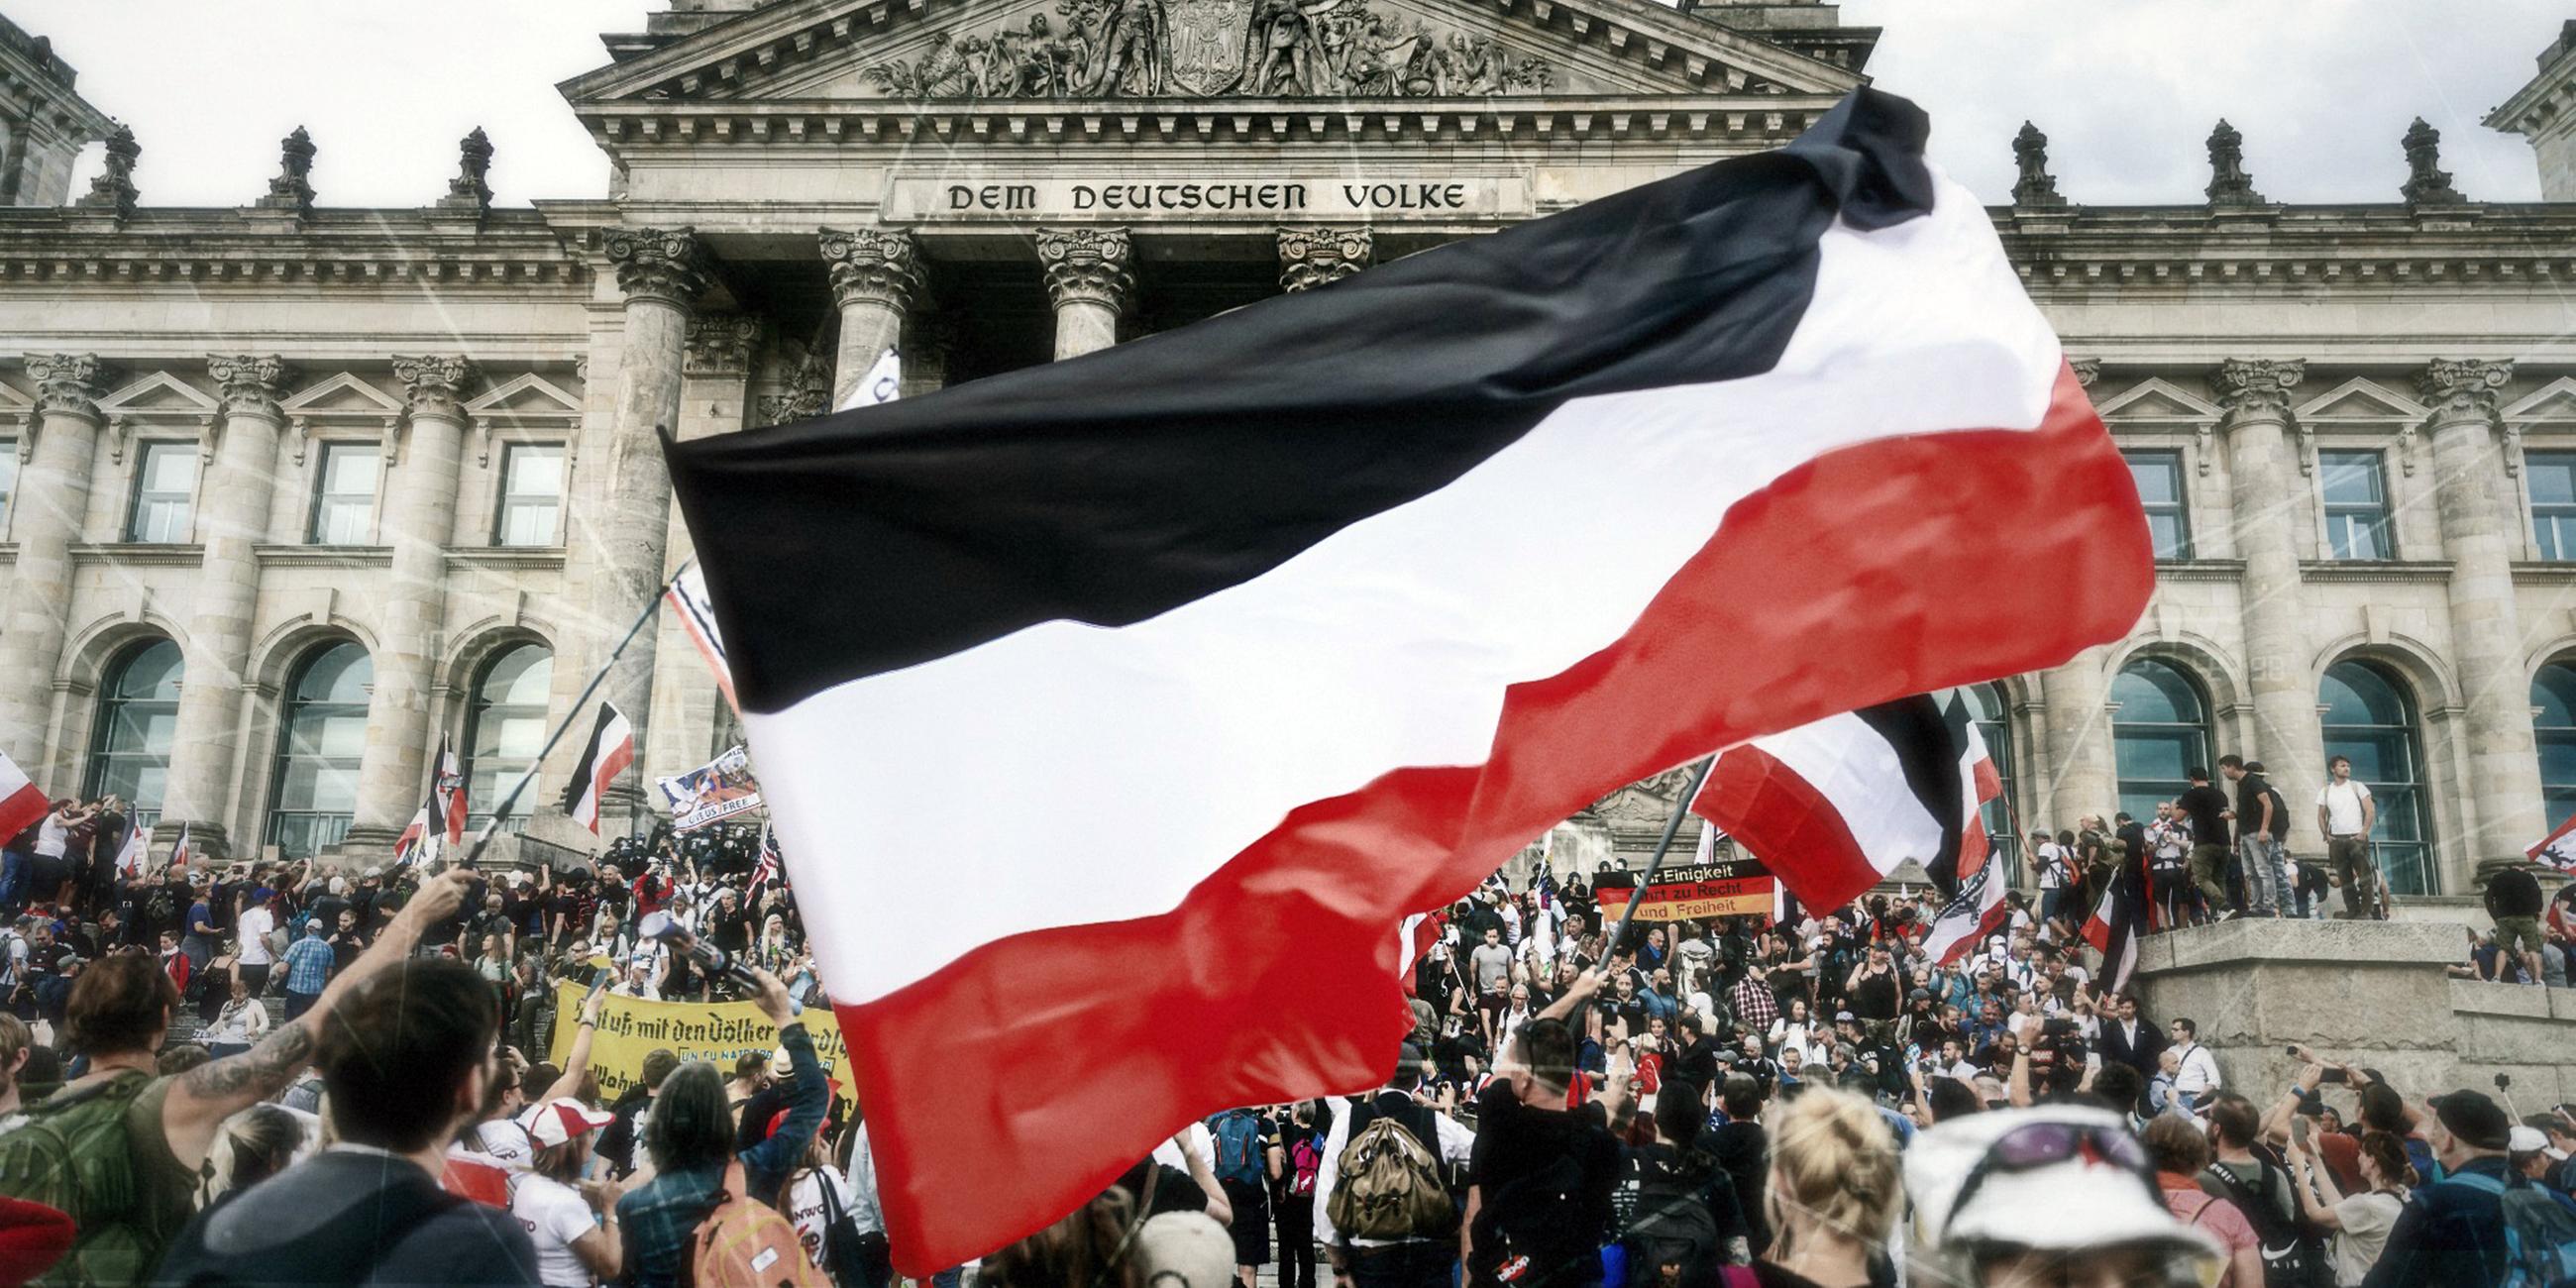 Sturm auf dem Bundestag/Reichstag Deutschland, Berlin am 29.08.2020: einige Hunderte Demonstrierende die gegen den Corona-Maasnahmen sind, sturmen auf die Treppen des Reichstages. Viele Trugen die Reichsflagge sowie die russische und die Amerikanische.